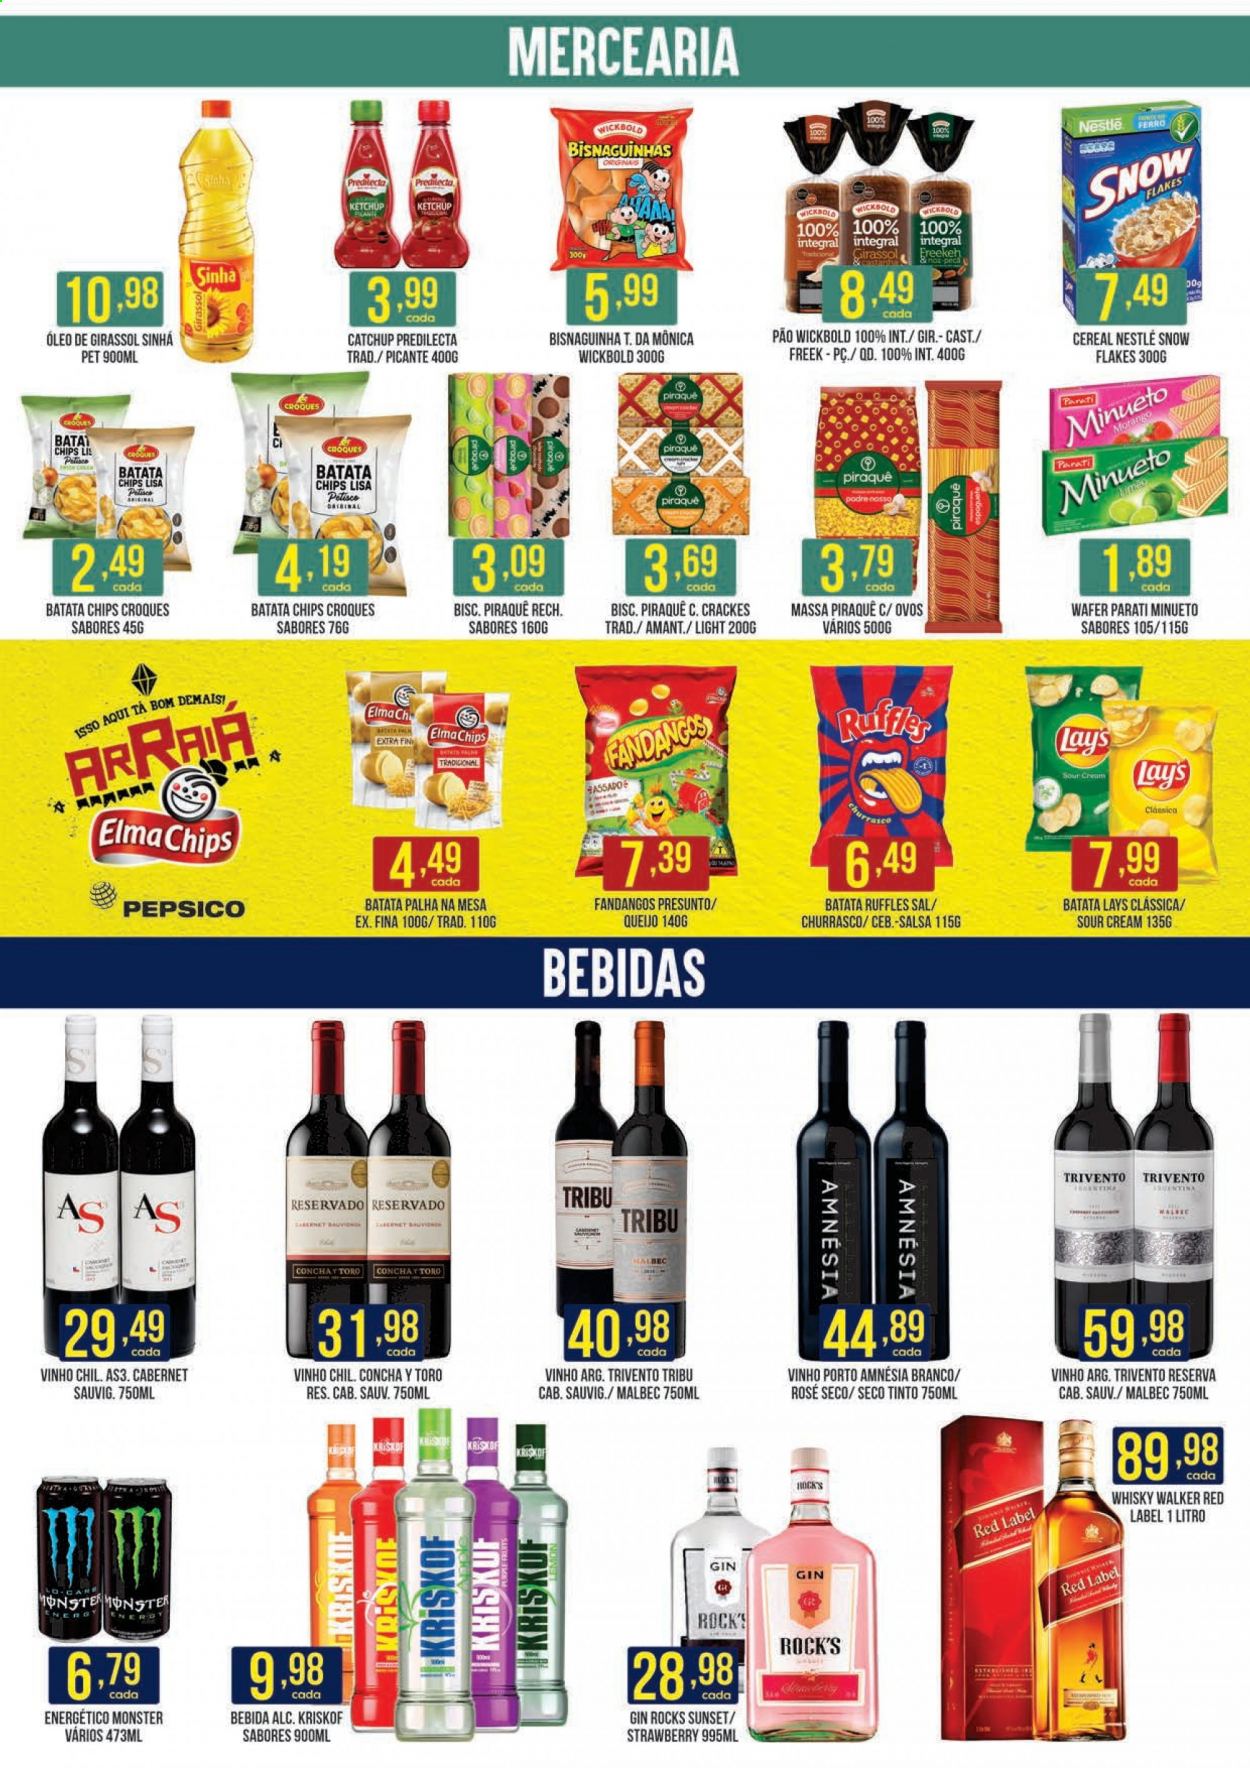 thumbnail - Folheto Casagrande Supermercados - 05/07/2021 - 25/07/2021 - Produtos em promoção - pão, batata palha, presunto, Nestlé, bisnaguinha, chips, Lay's, sal, ketchup, óleo de girassol, vinho, malbec, cabernet, gin, whiskey. Página 2.